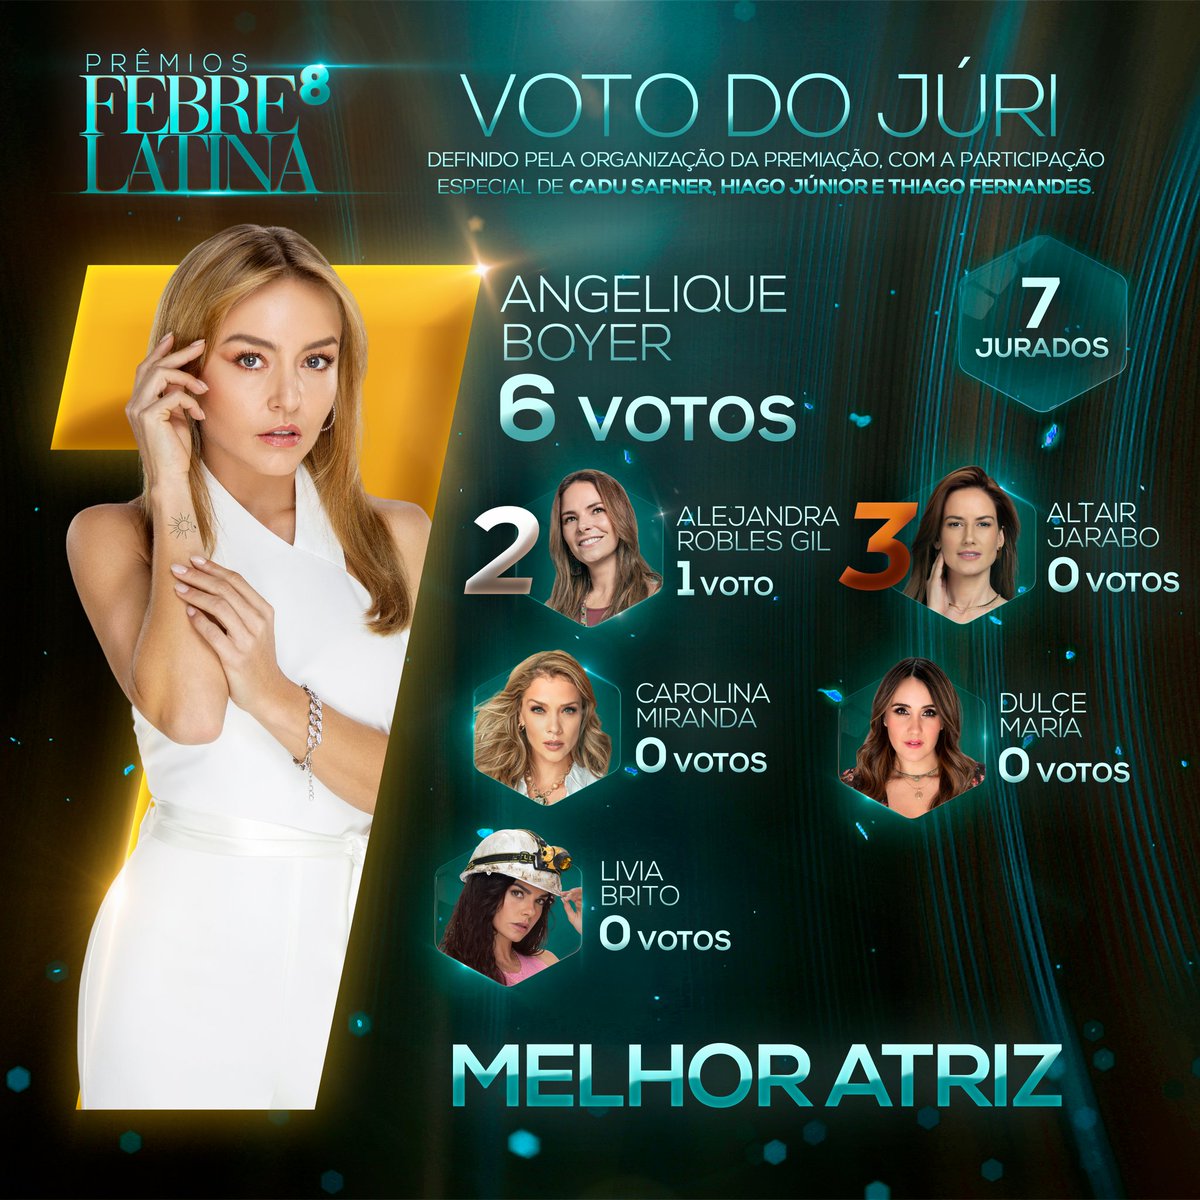 #PrêmiosFebreLatina Angelique Boyer, a Leona de #ElAmorInvencible, foi a campeã na categoria MELHOR ATRIZ com 6 dos 7 votos do júri.